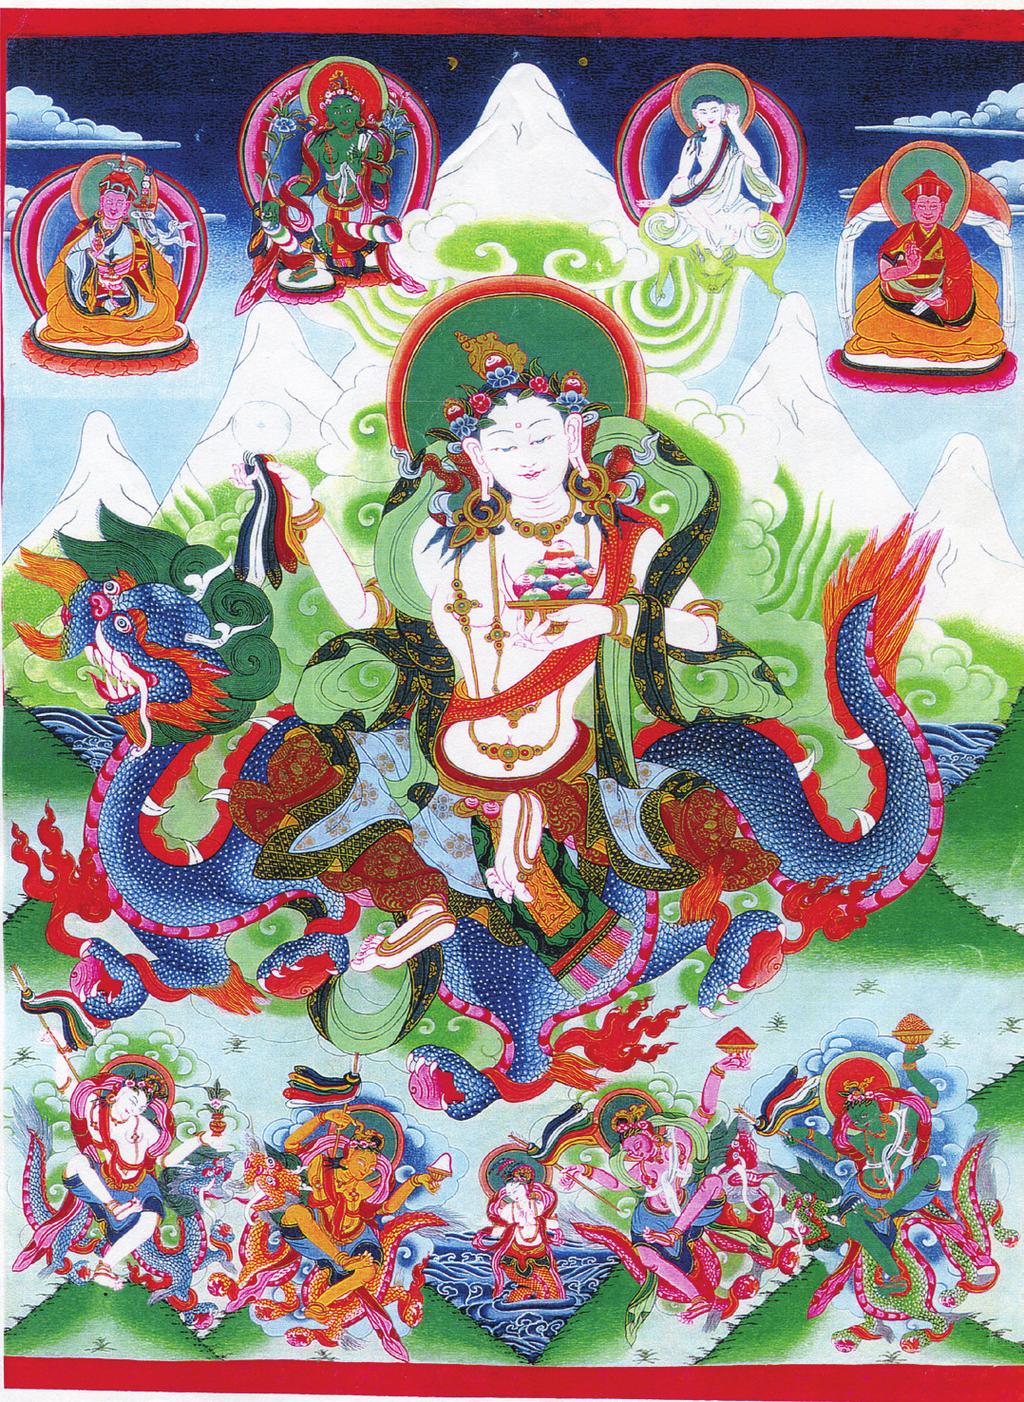 GELLE ZSÓKA 1. kép: A Drukpa Kagyü vonal által használt Ama Jangri festmény: fenn balról jobbra: Guru Rinpócse, Zöld Tárá, Milarepa, Drukpa Rinpócse.